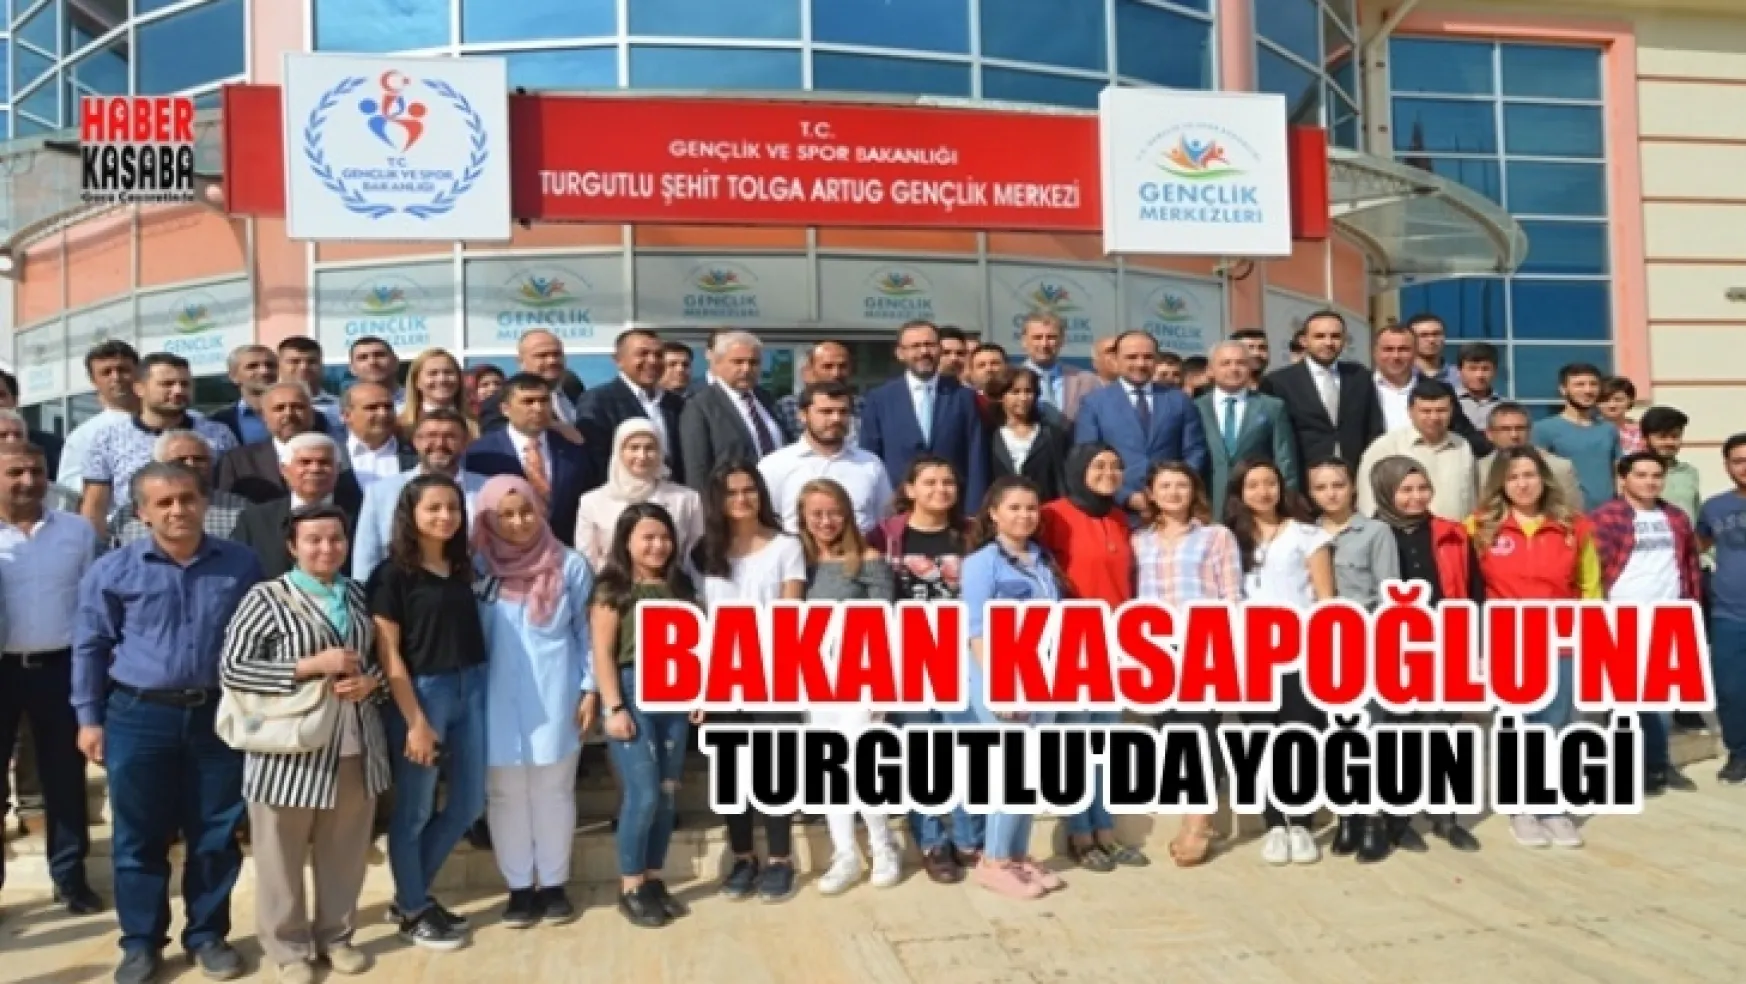 Bakan Kasapoğlu, Turgutlu'da Yoğun bir ilgiyle karşılandı (Video)